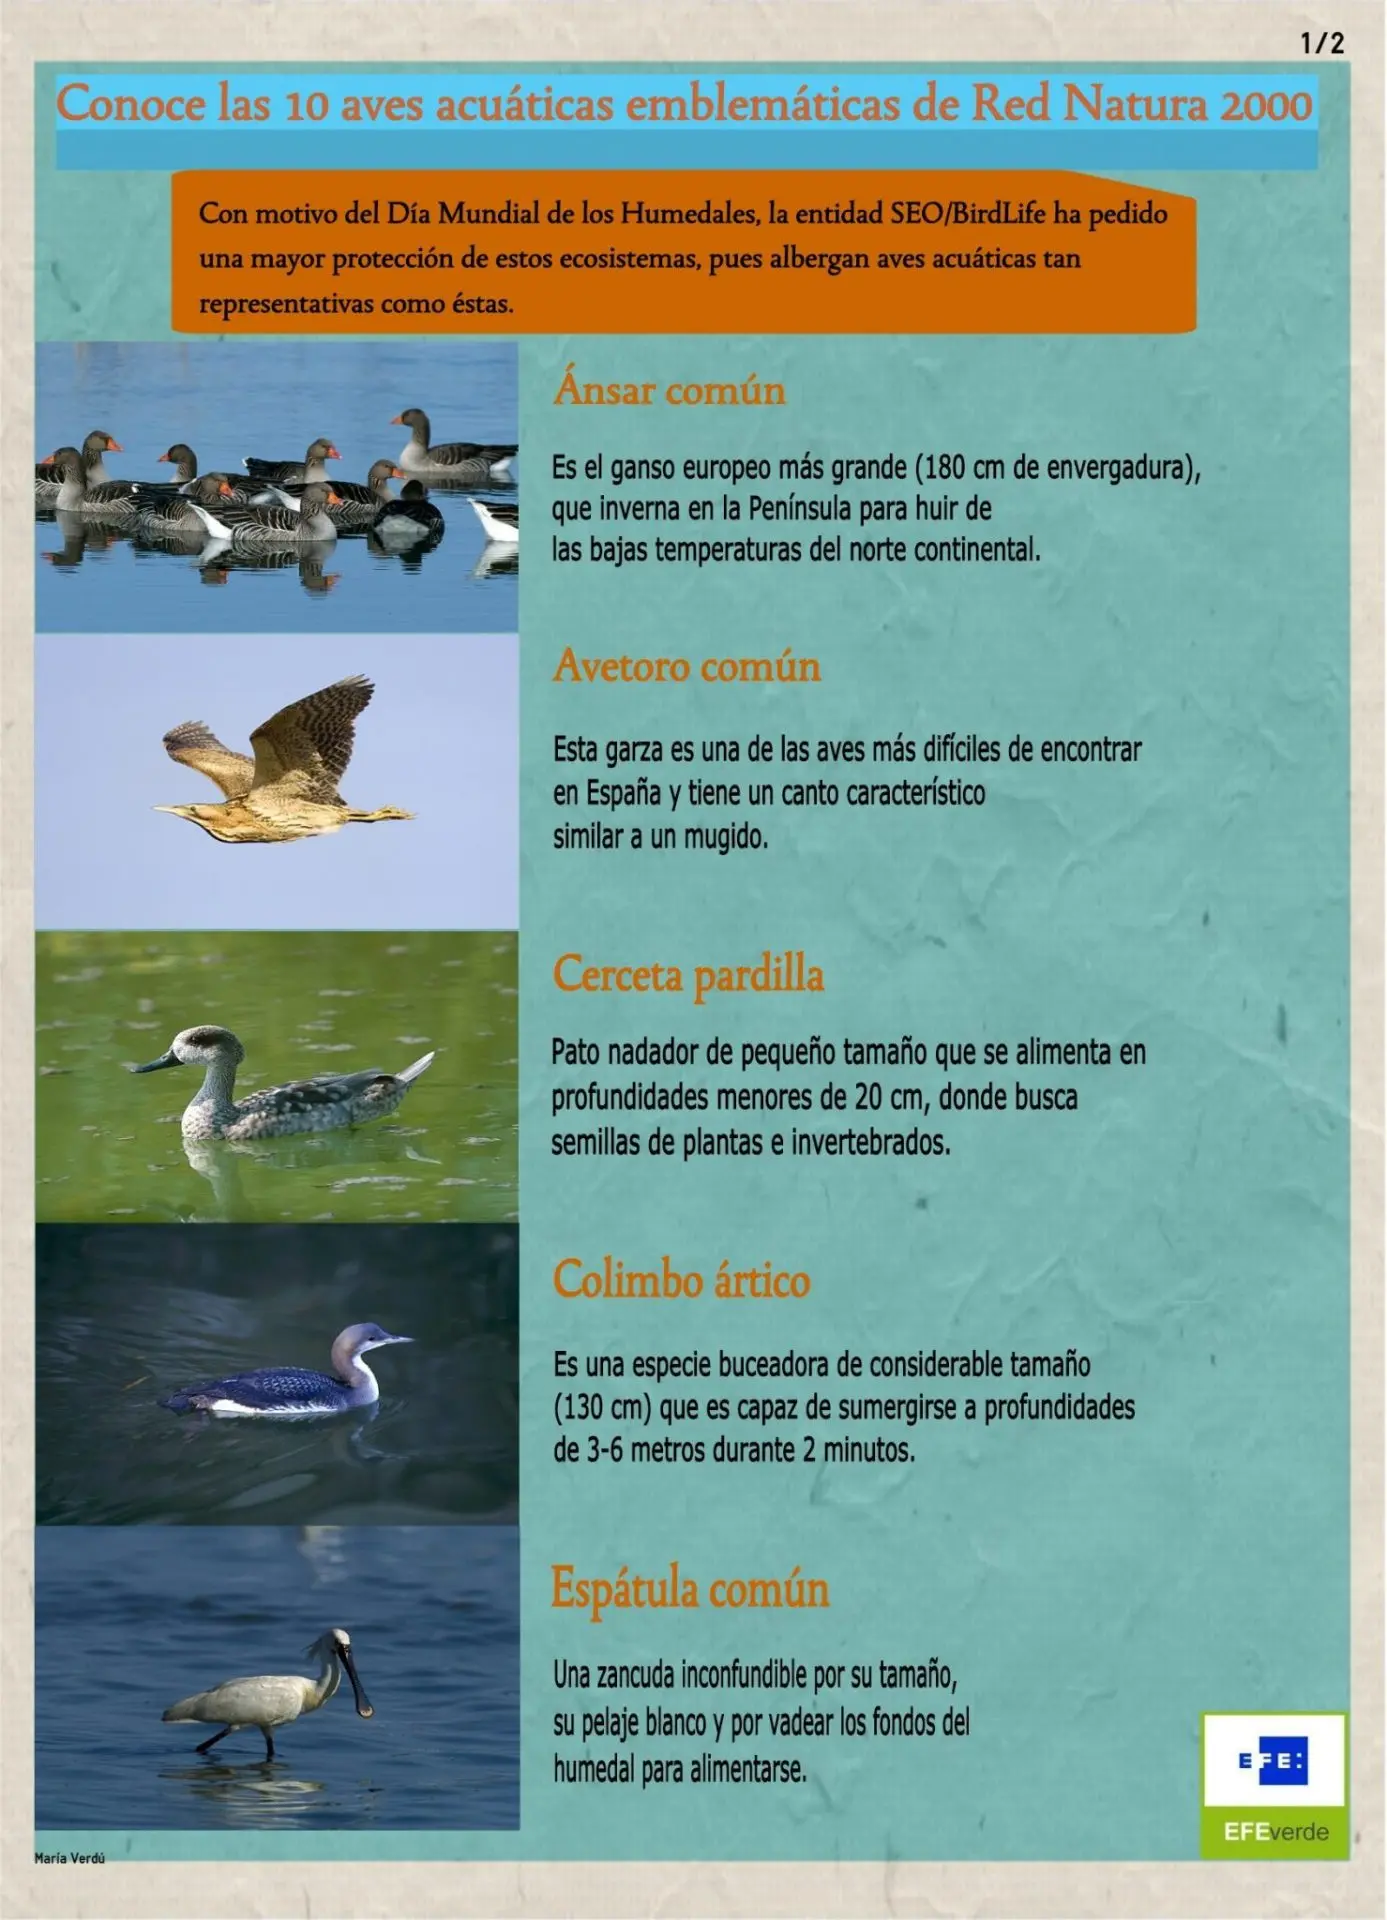 nombre aves acuaticas - Cómo se llaman las aves acuáticas